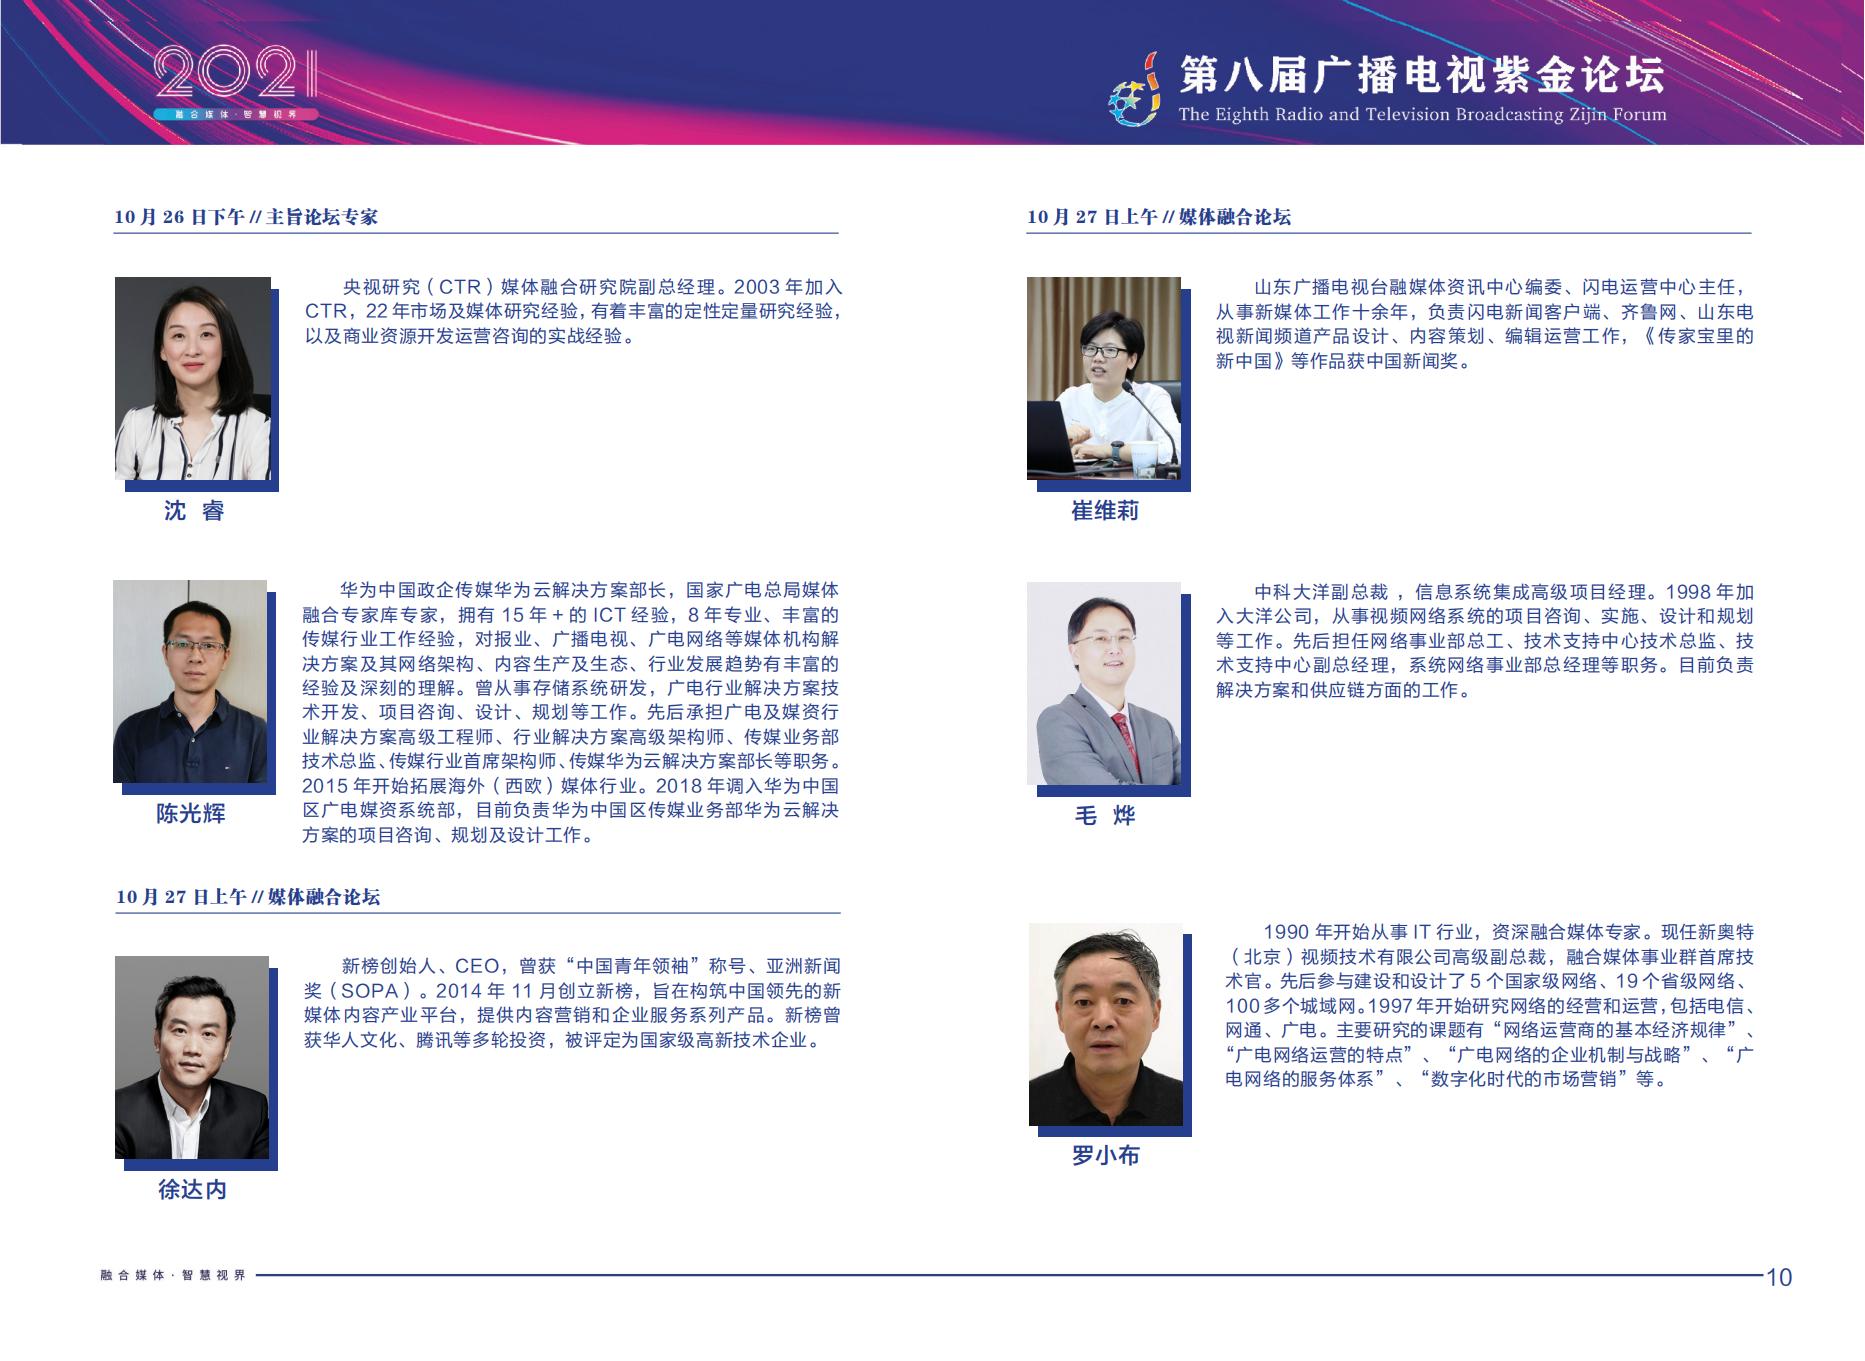 2021年第八届广播电视紫金论坛将在南京召开-DVBCN